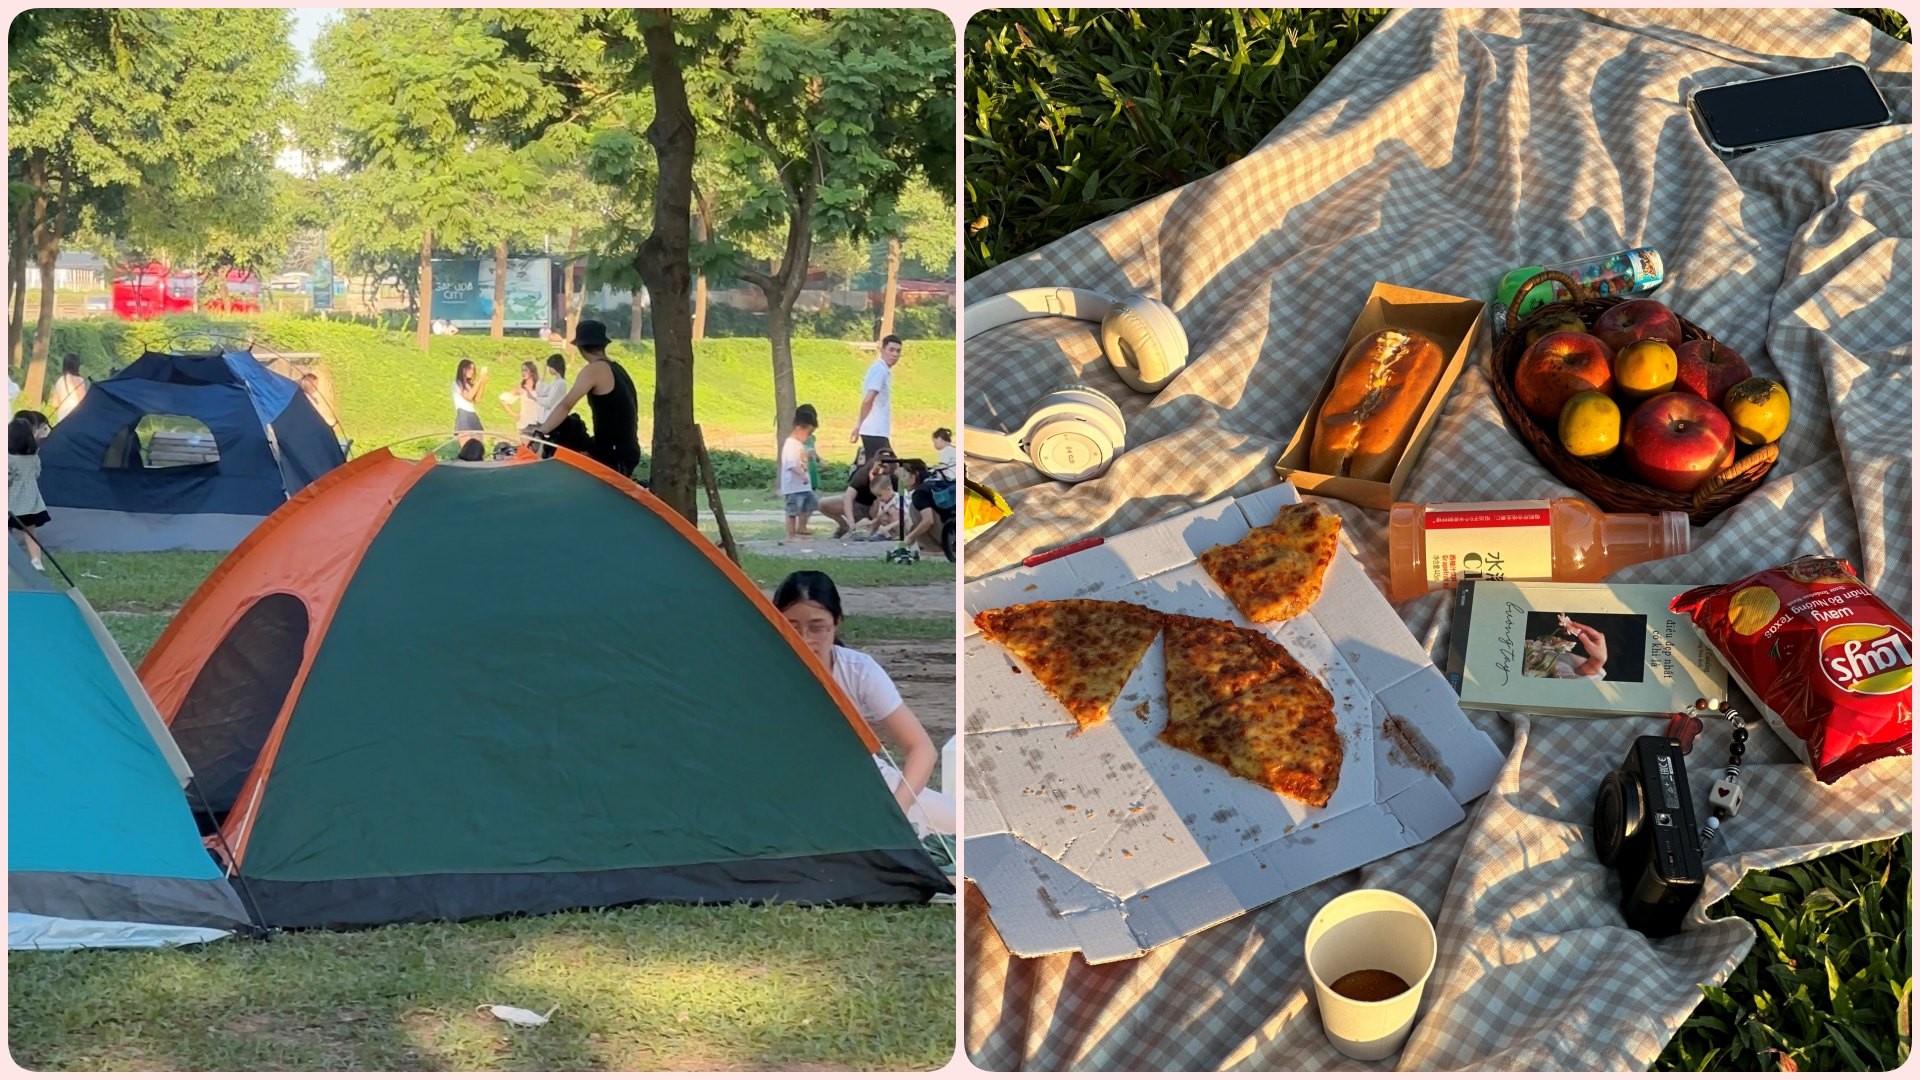 Trải nghiệm một ngày cắm trại tại công viên "hot" nhất Hà Nội